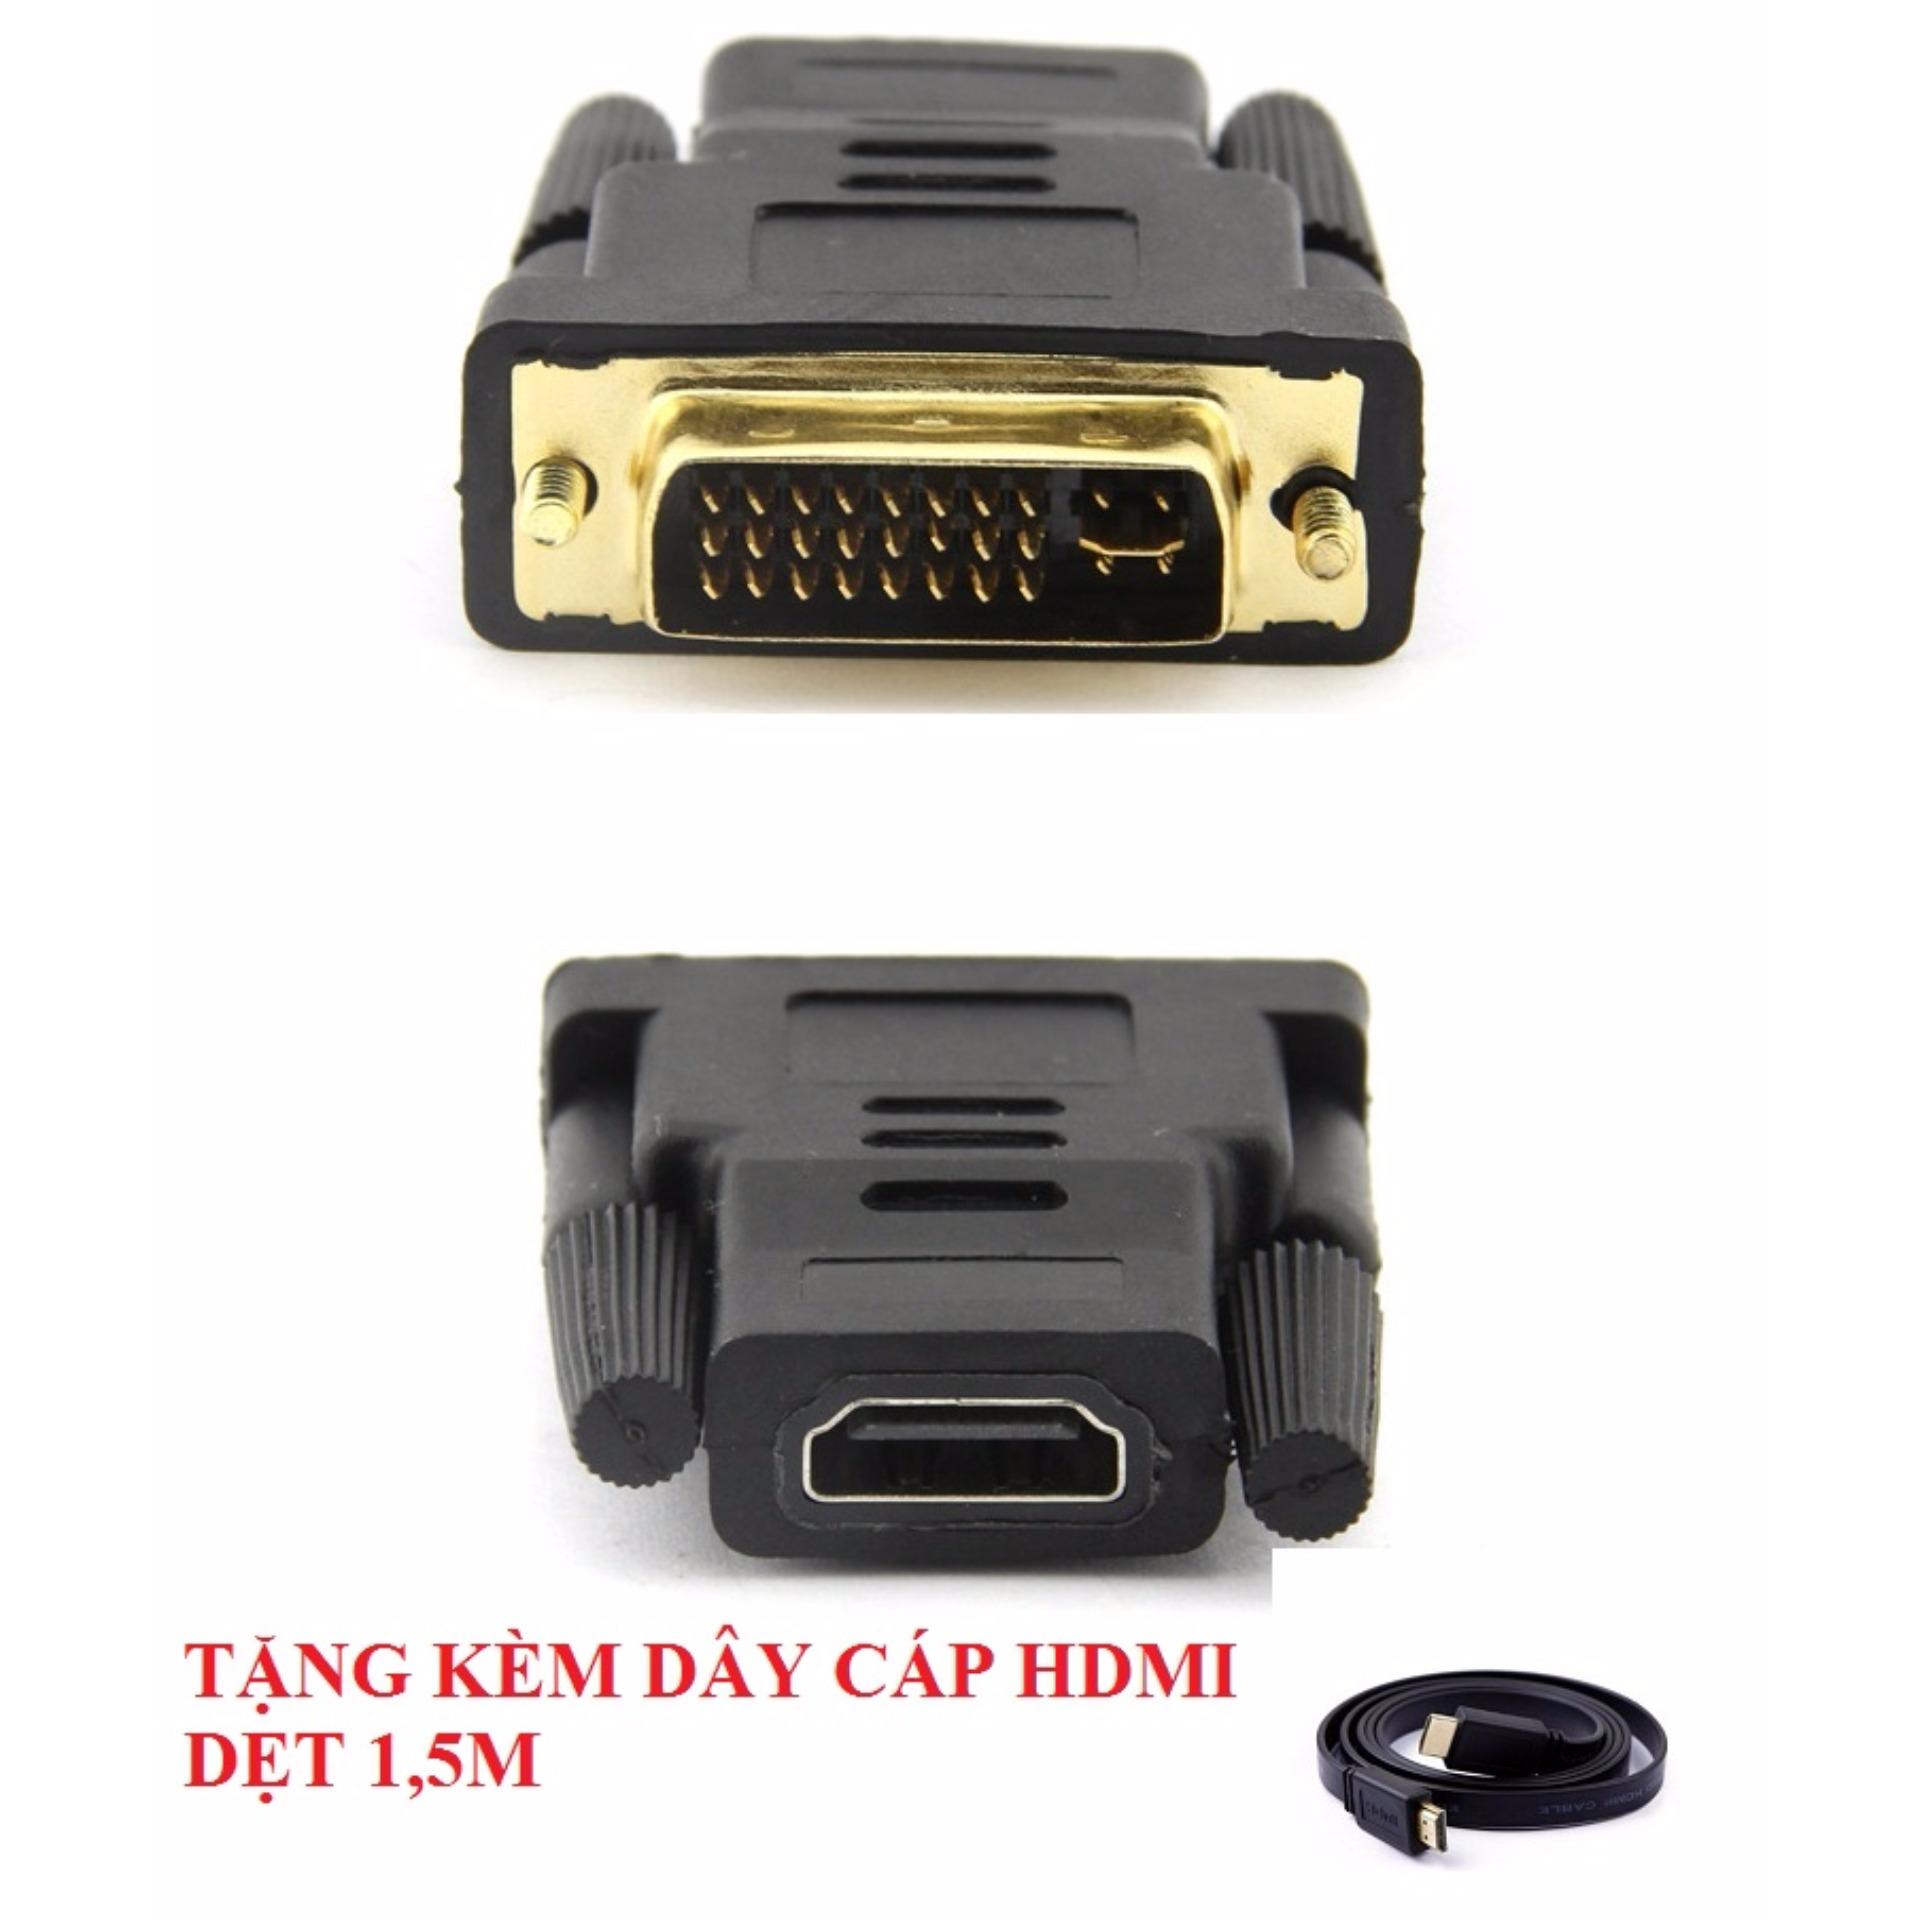 Đầu chuyển DVI (24+5) sang HDMI + Tặng kèm cáp HDMI 1.5M